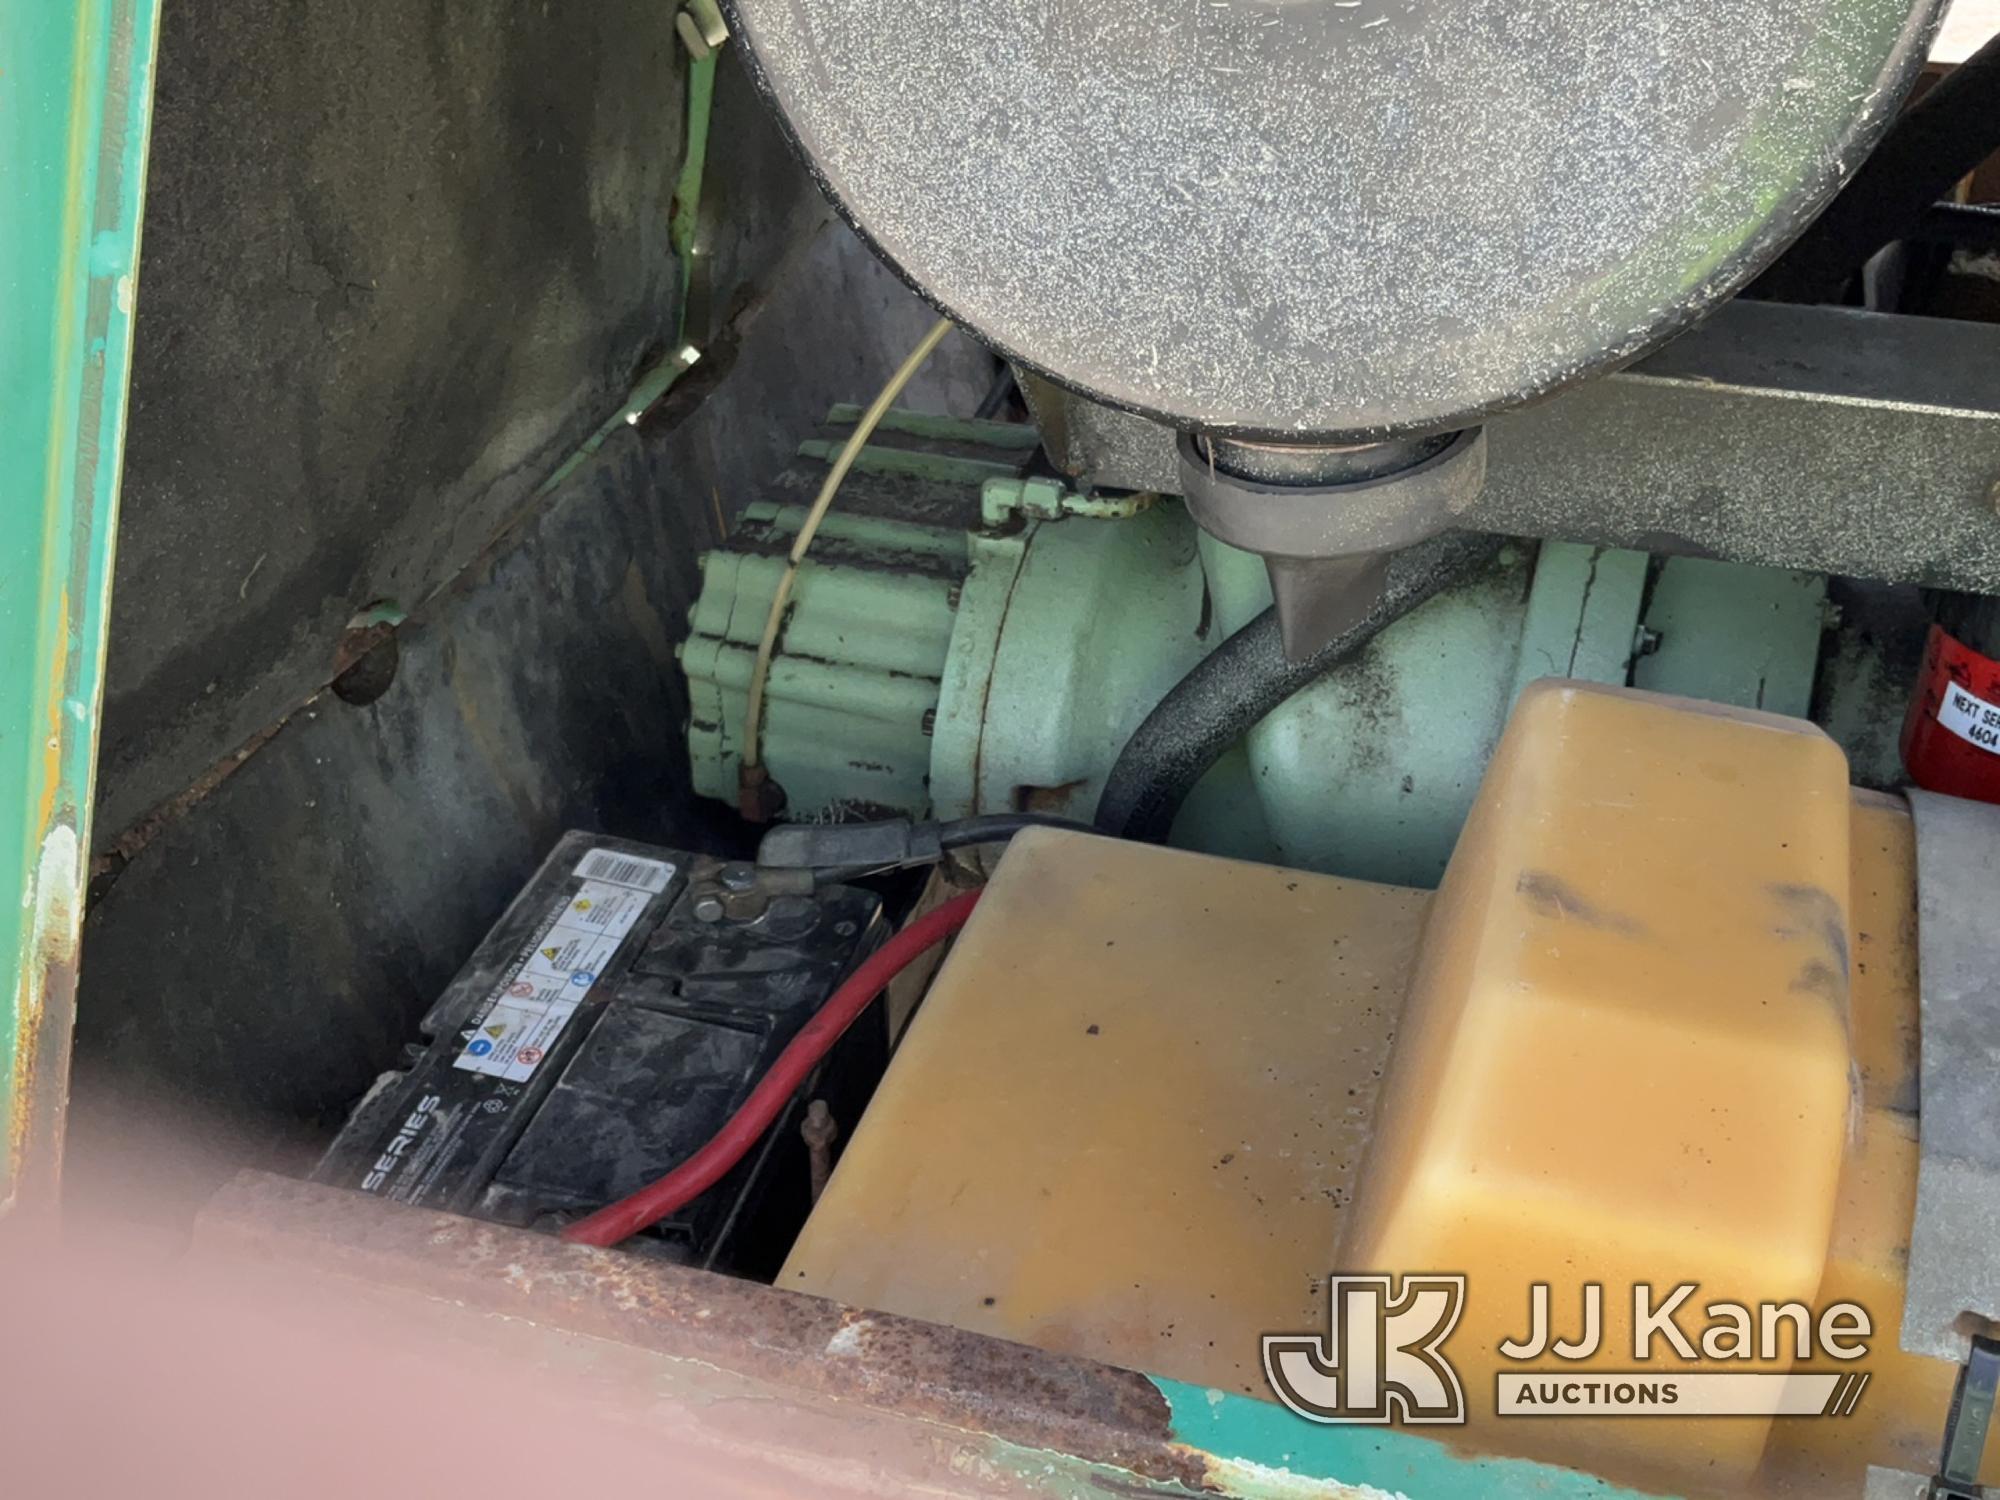 (Charlotte, MI) Sullair 375HDPQJD Portable Air Compressor No Title, Rust, Body Damage, Runs, Operate